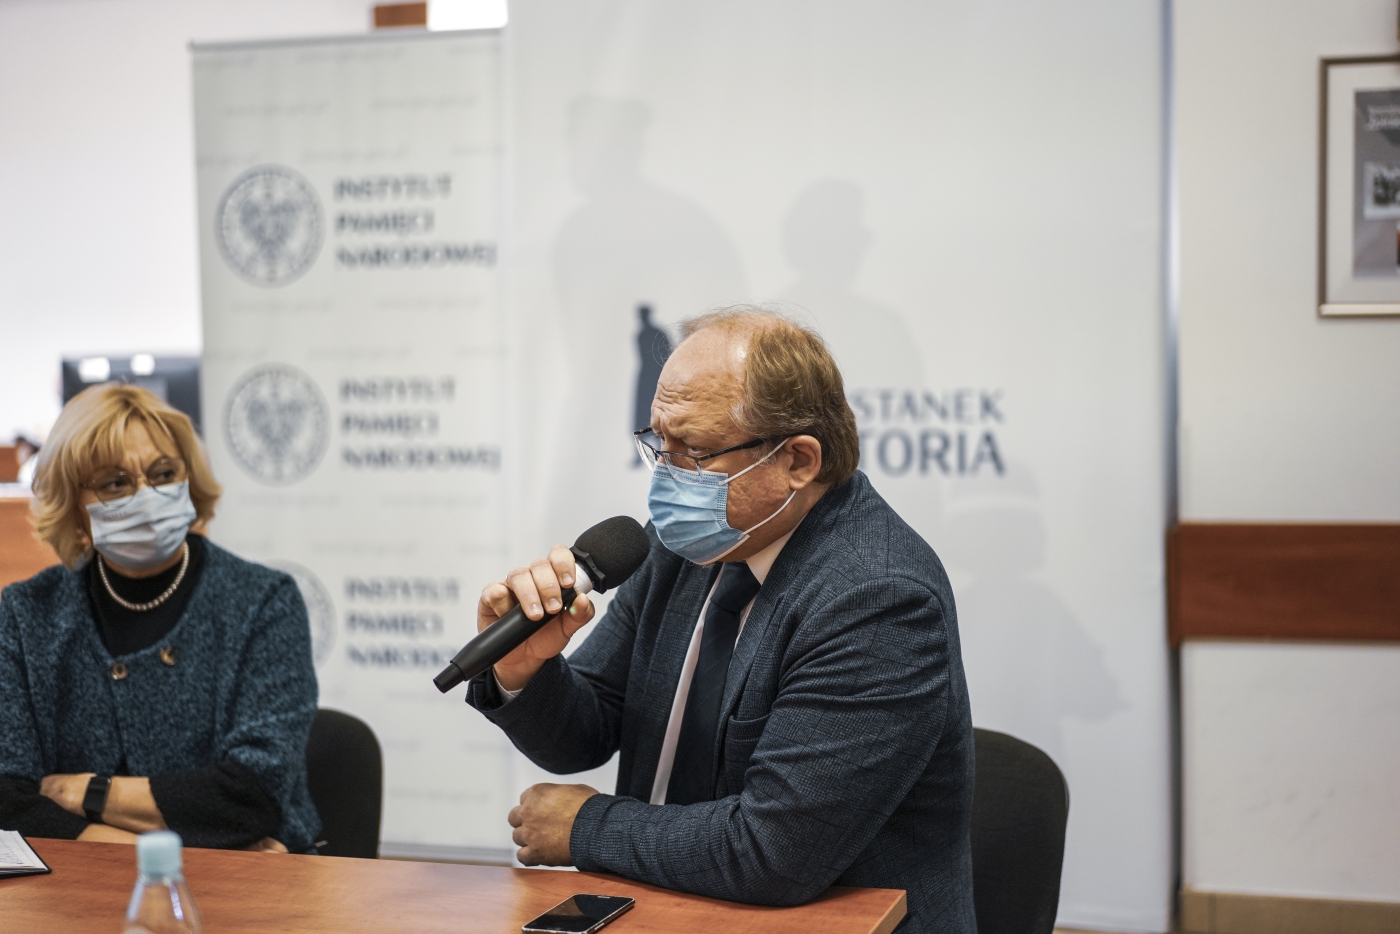 Wizyta mołdawskich dziennikarzy w Instytucie Pamięci Narodowej – Warszawa, 29 listopada 2021. Fot. Mateusz Niegowski (IPN)